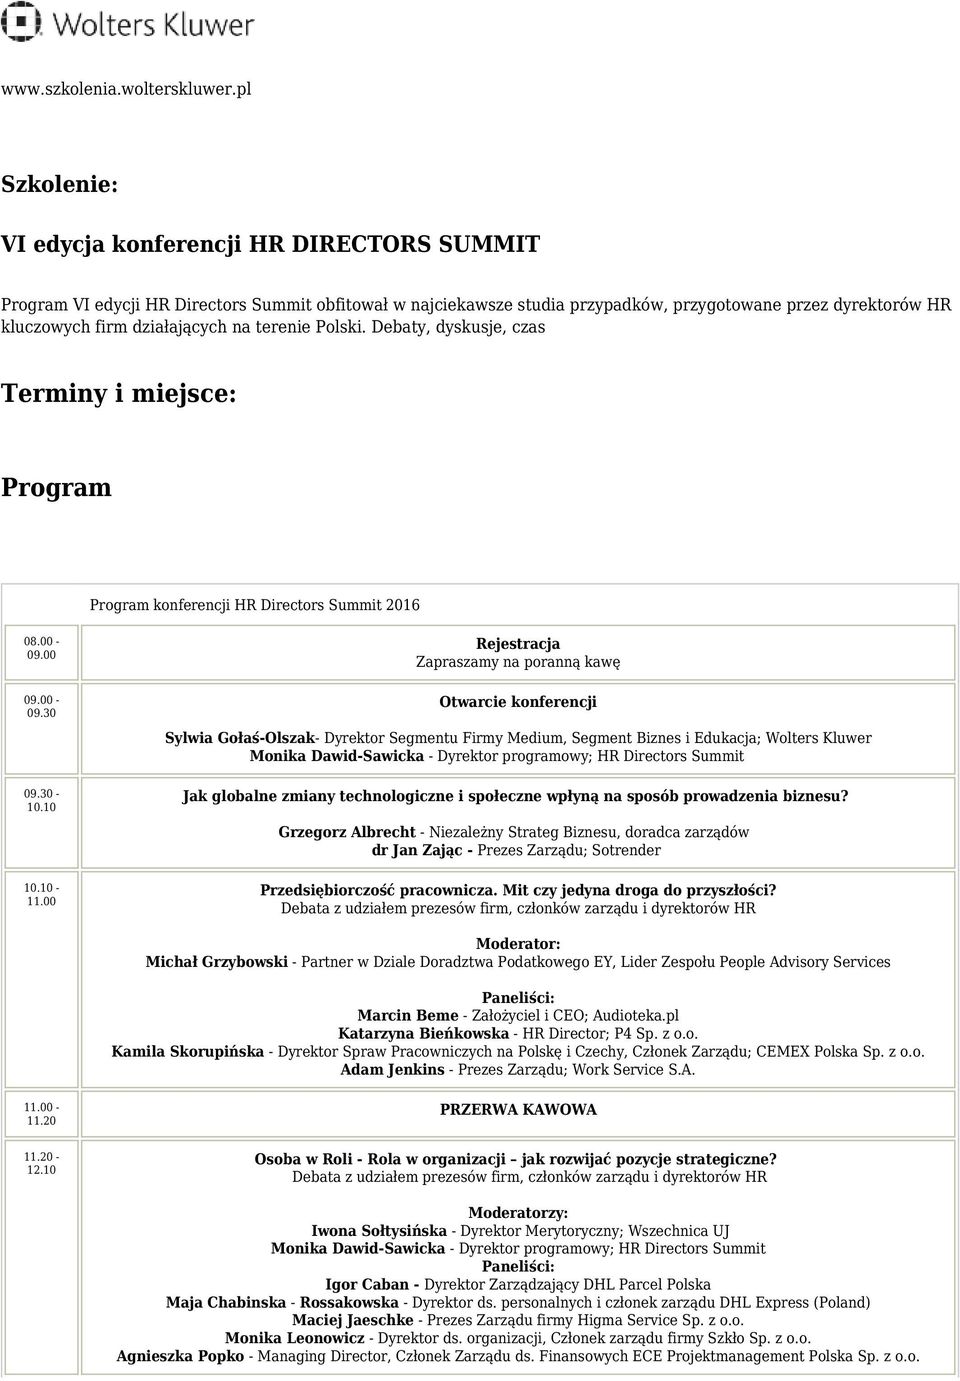 na terenie Polski. Debaty, dyskusje, czas Terminy i miejsce: Program Program konferencji HR Directors Summit 2016 08.00-09.00 09.00-09.30 09.30-10.10 10.10-11.